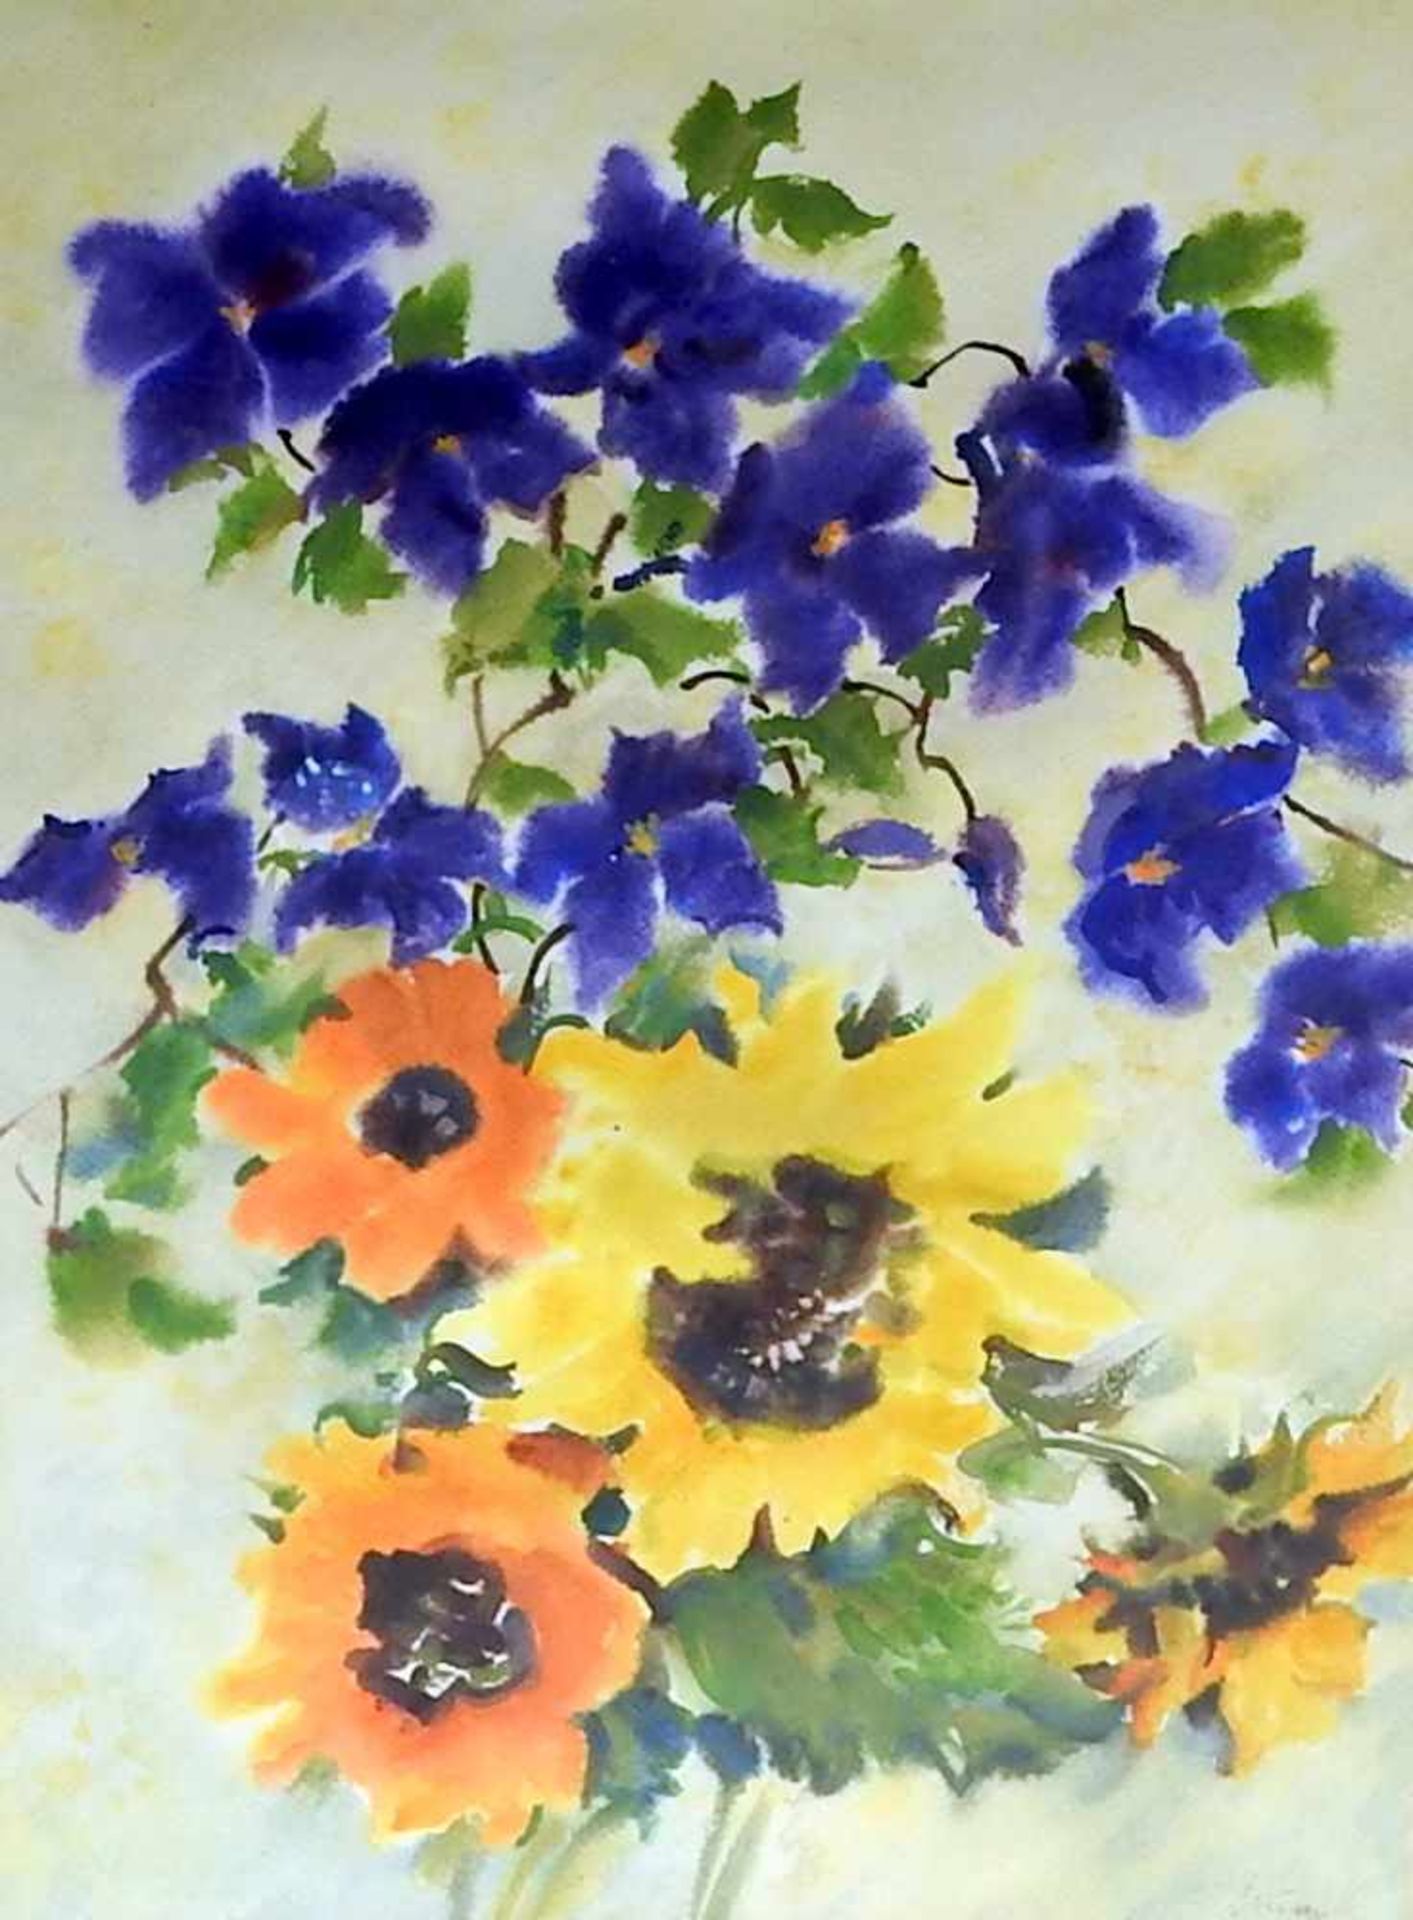 BlumenaquarellAquarell/Papier. Sonnenblumen mit darüberliegenden blau blühenden Blumen vor